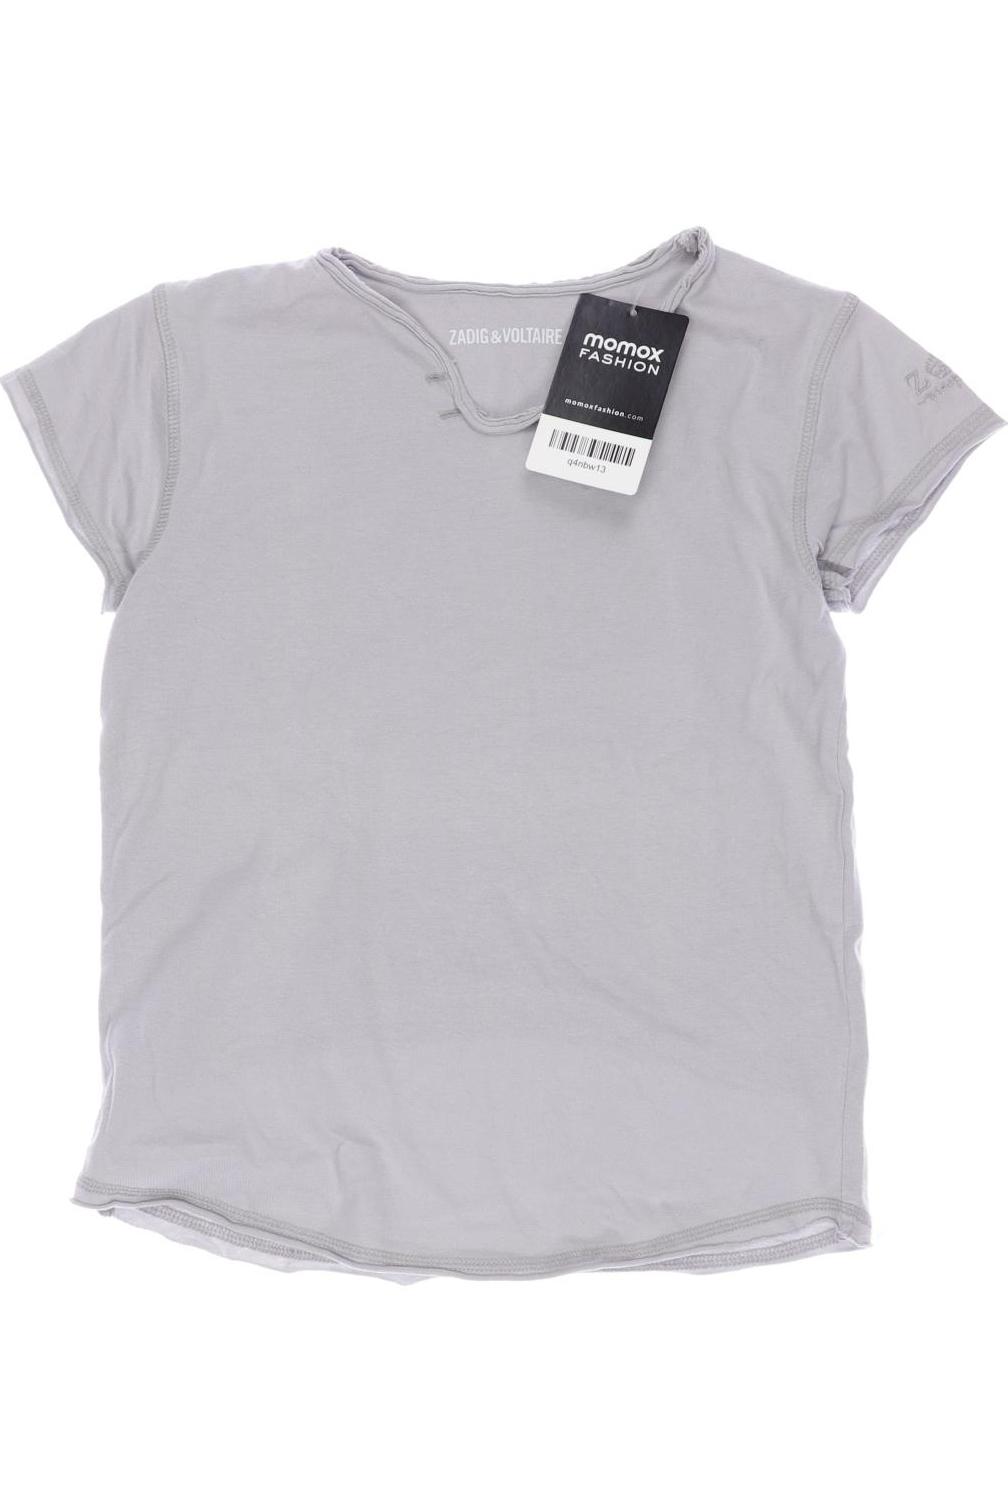 Zadig & Voltaire Mädchen T-Shirt, grau von Zadig & Voltaire